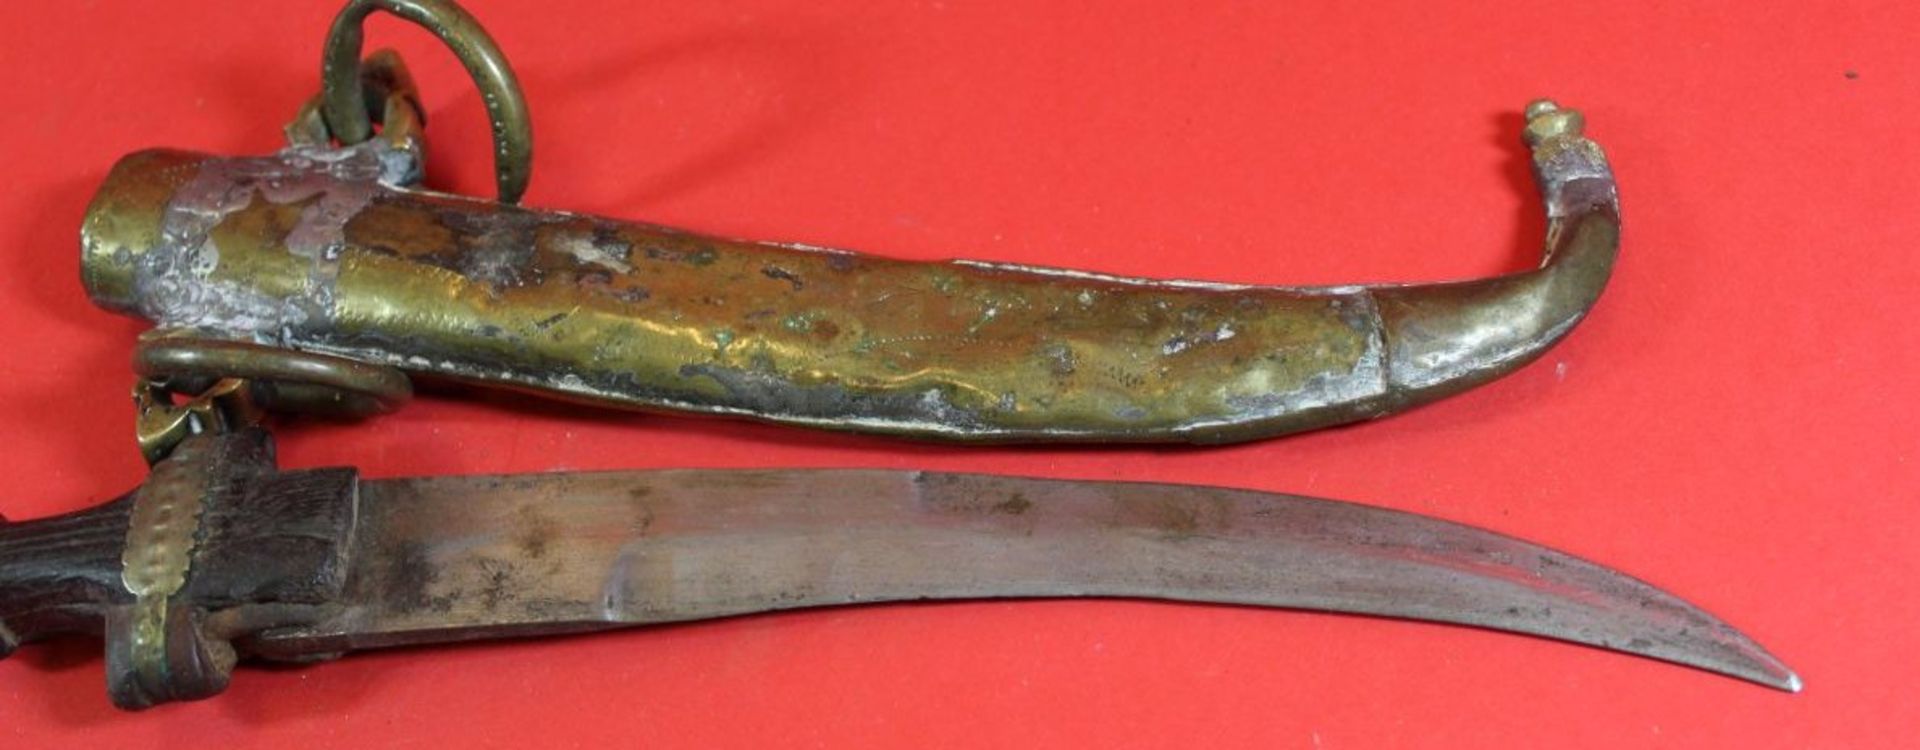 Krummdolch in Messingscheide, L-38 cm, Gebrauchsspuren - Bild 6 aus 8